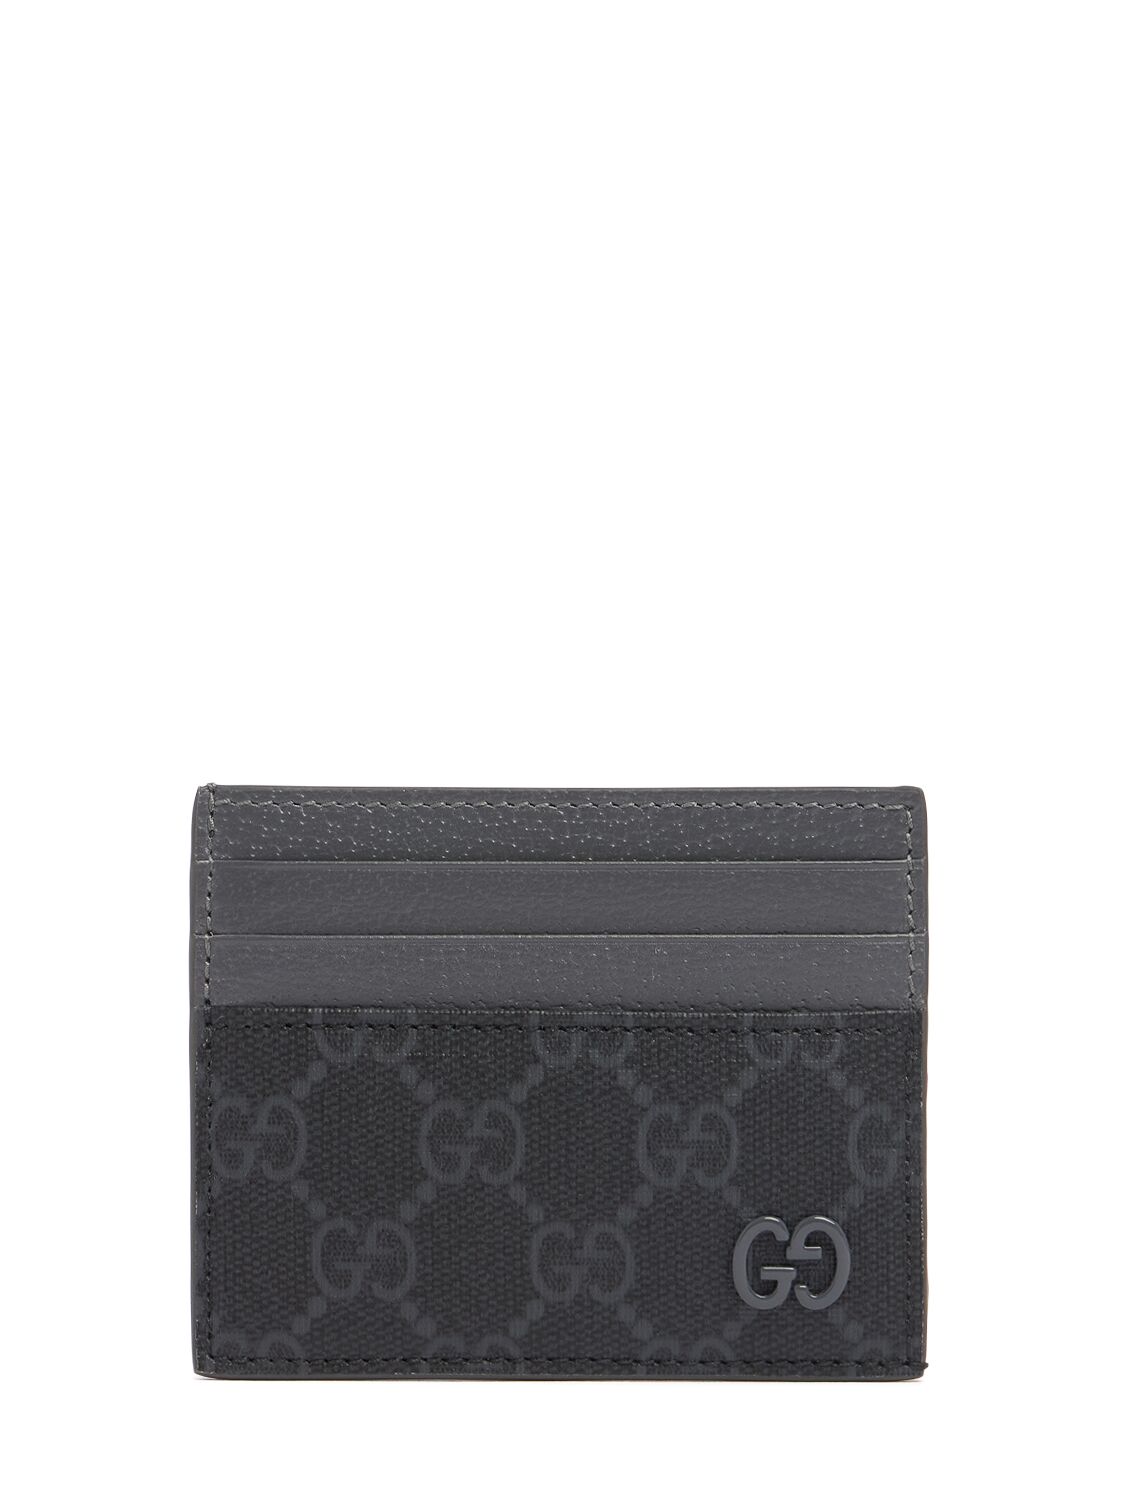 Gucci Bicolor Gg Card Case In Black